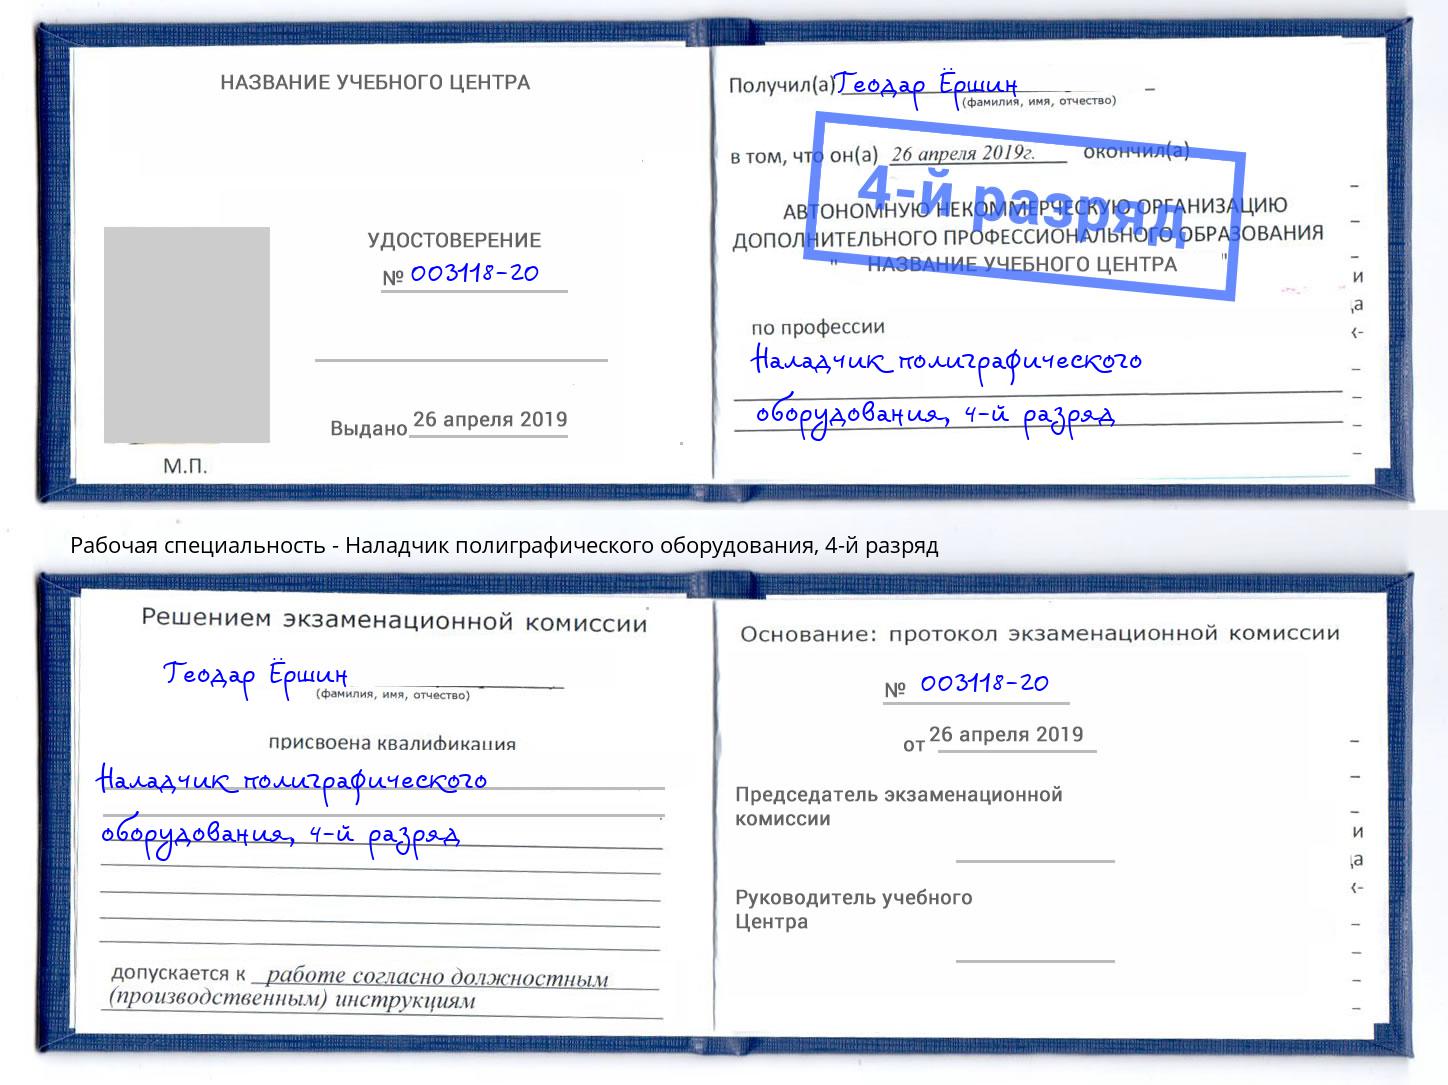 корочка 4-й разряд Наладчик полиграфического оборудования Южно-Сахалинск